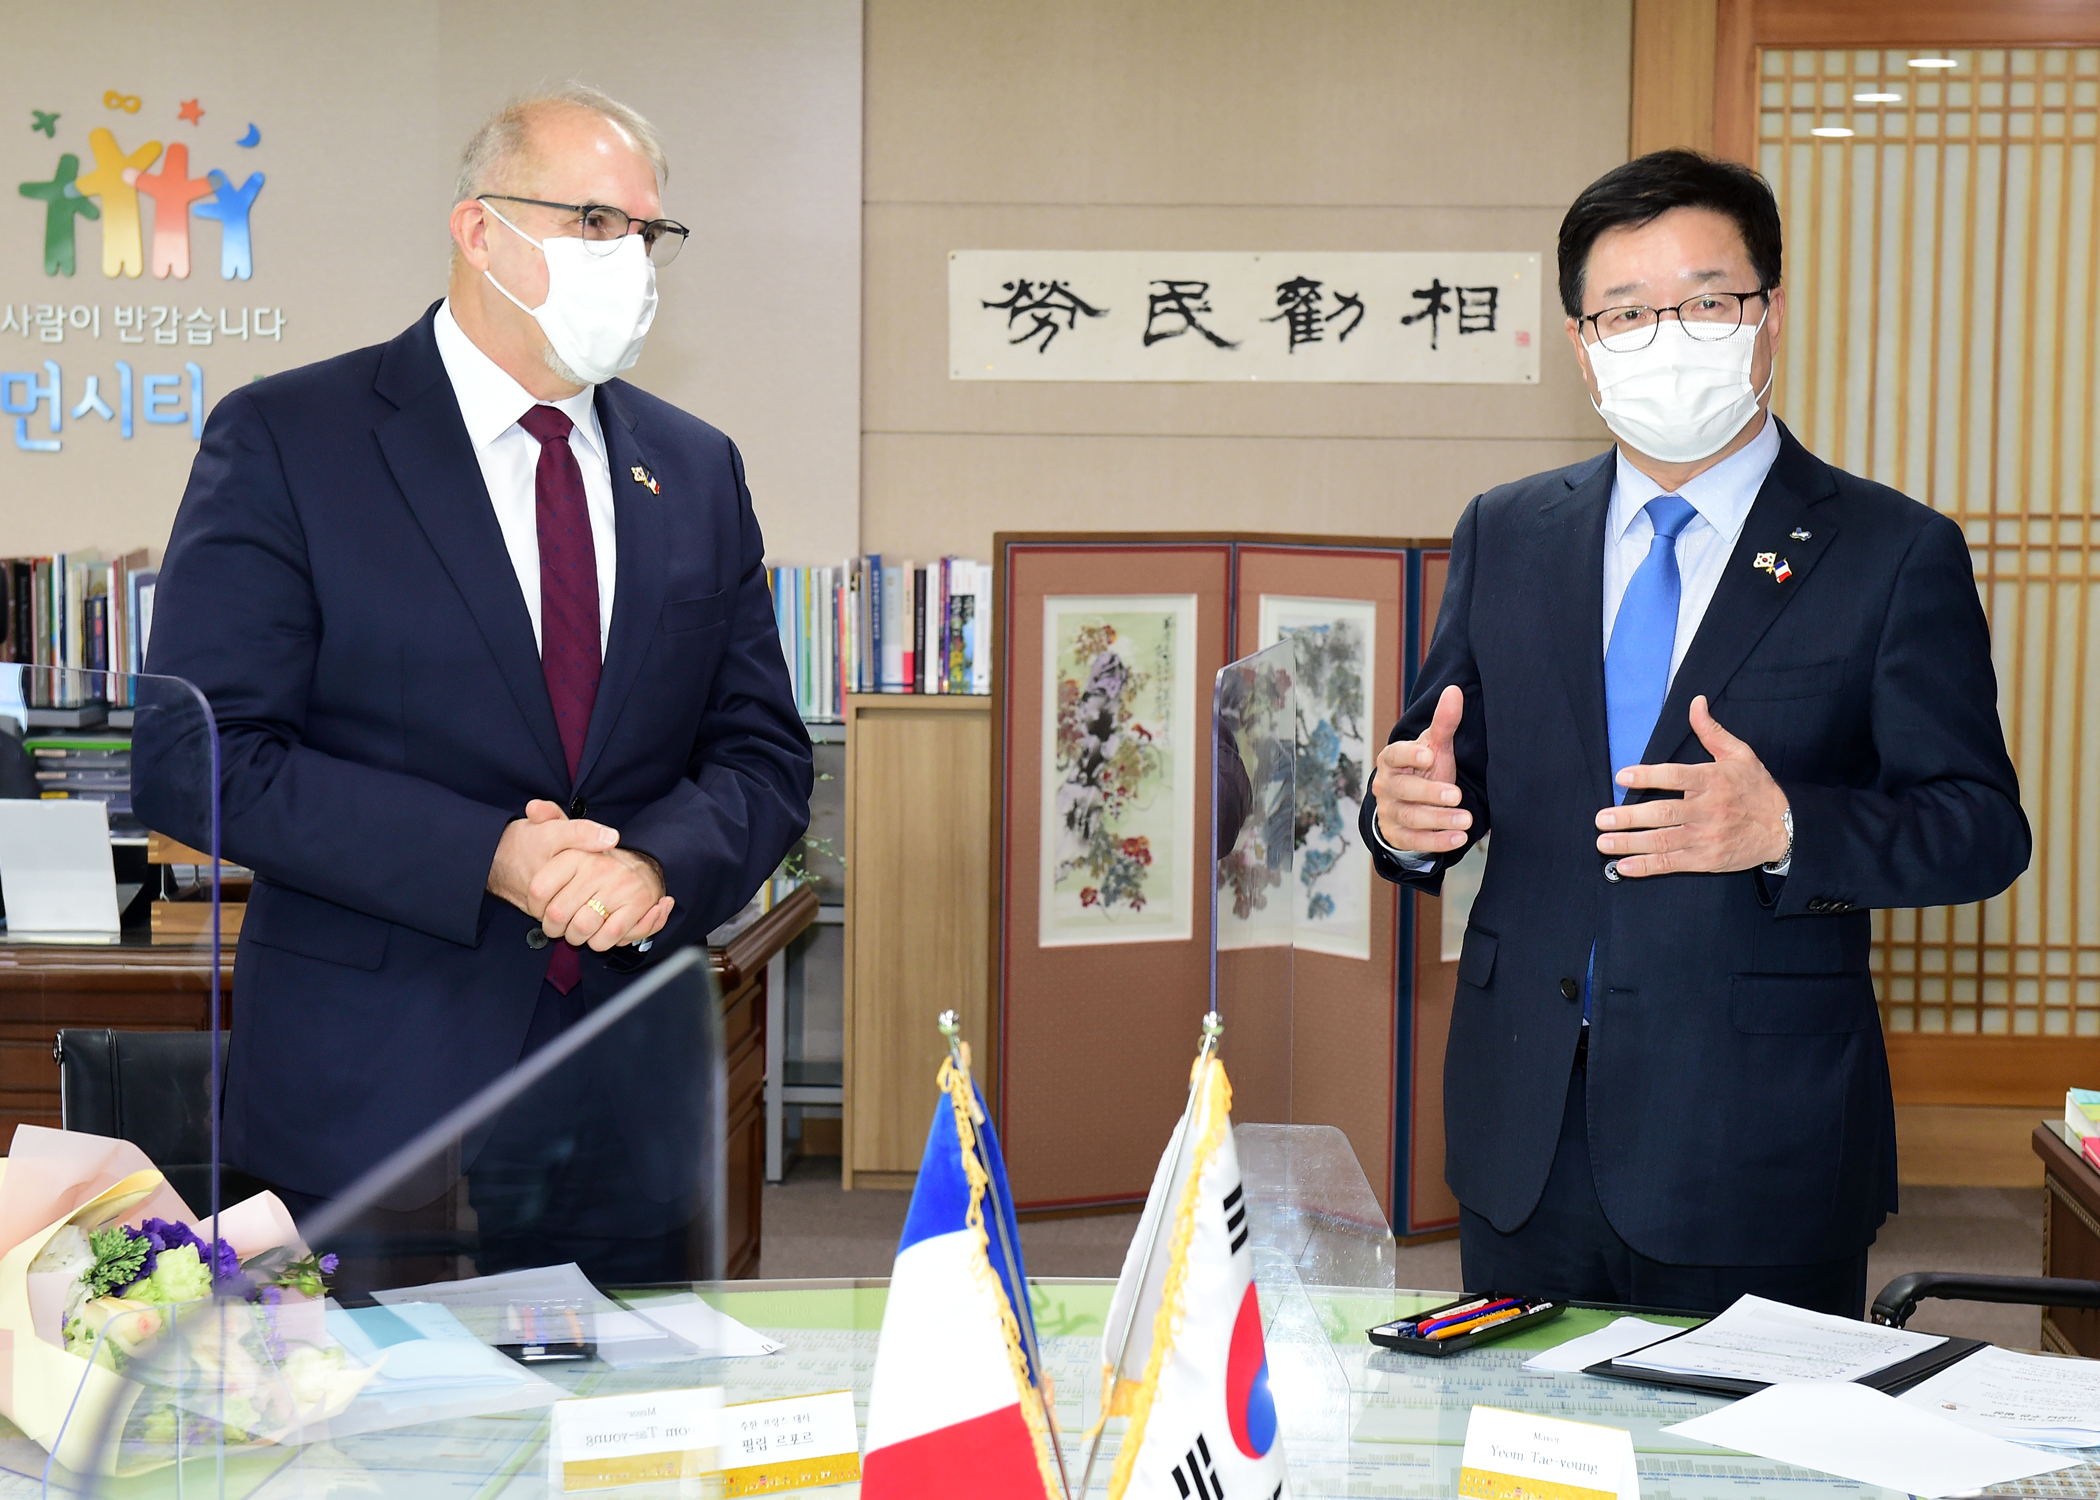 염태영 시장, 주한 프랑스 대사 만나 “한국·프랑스  우호협력에 이바지하